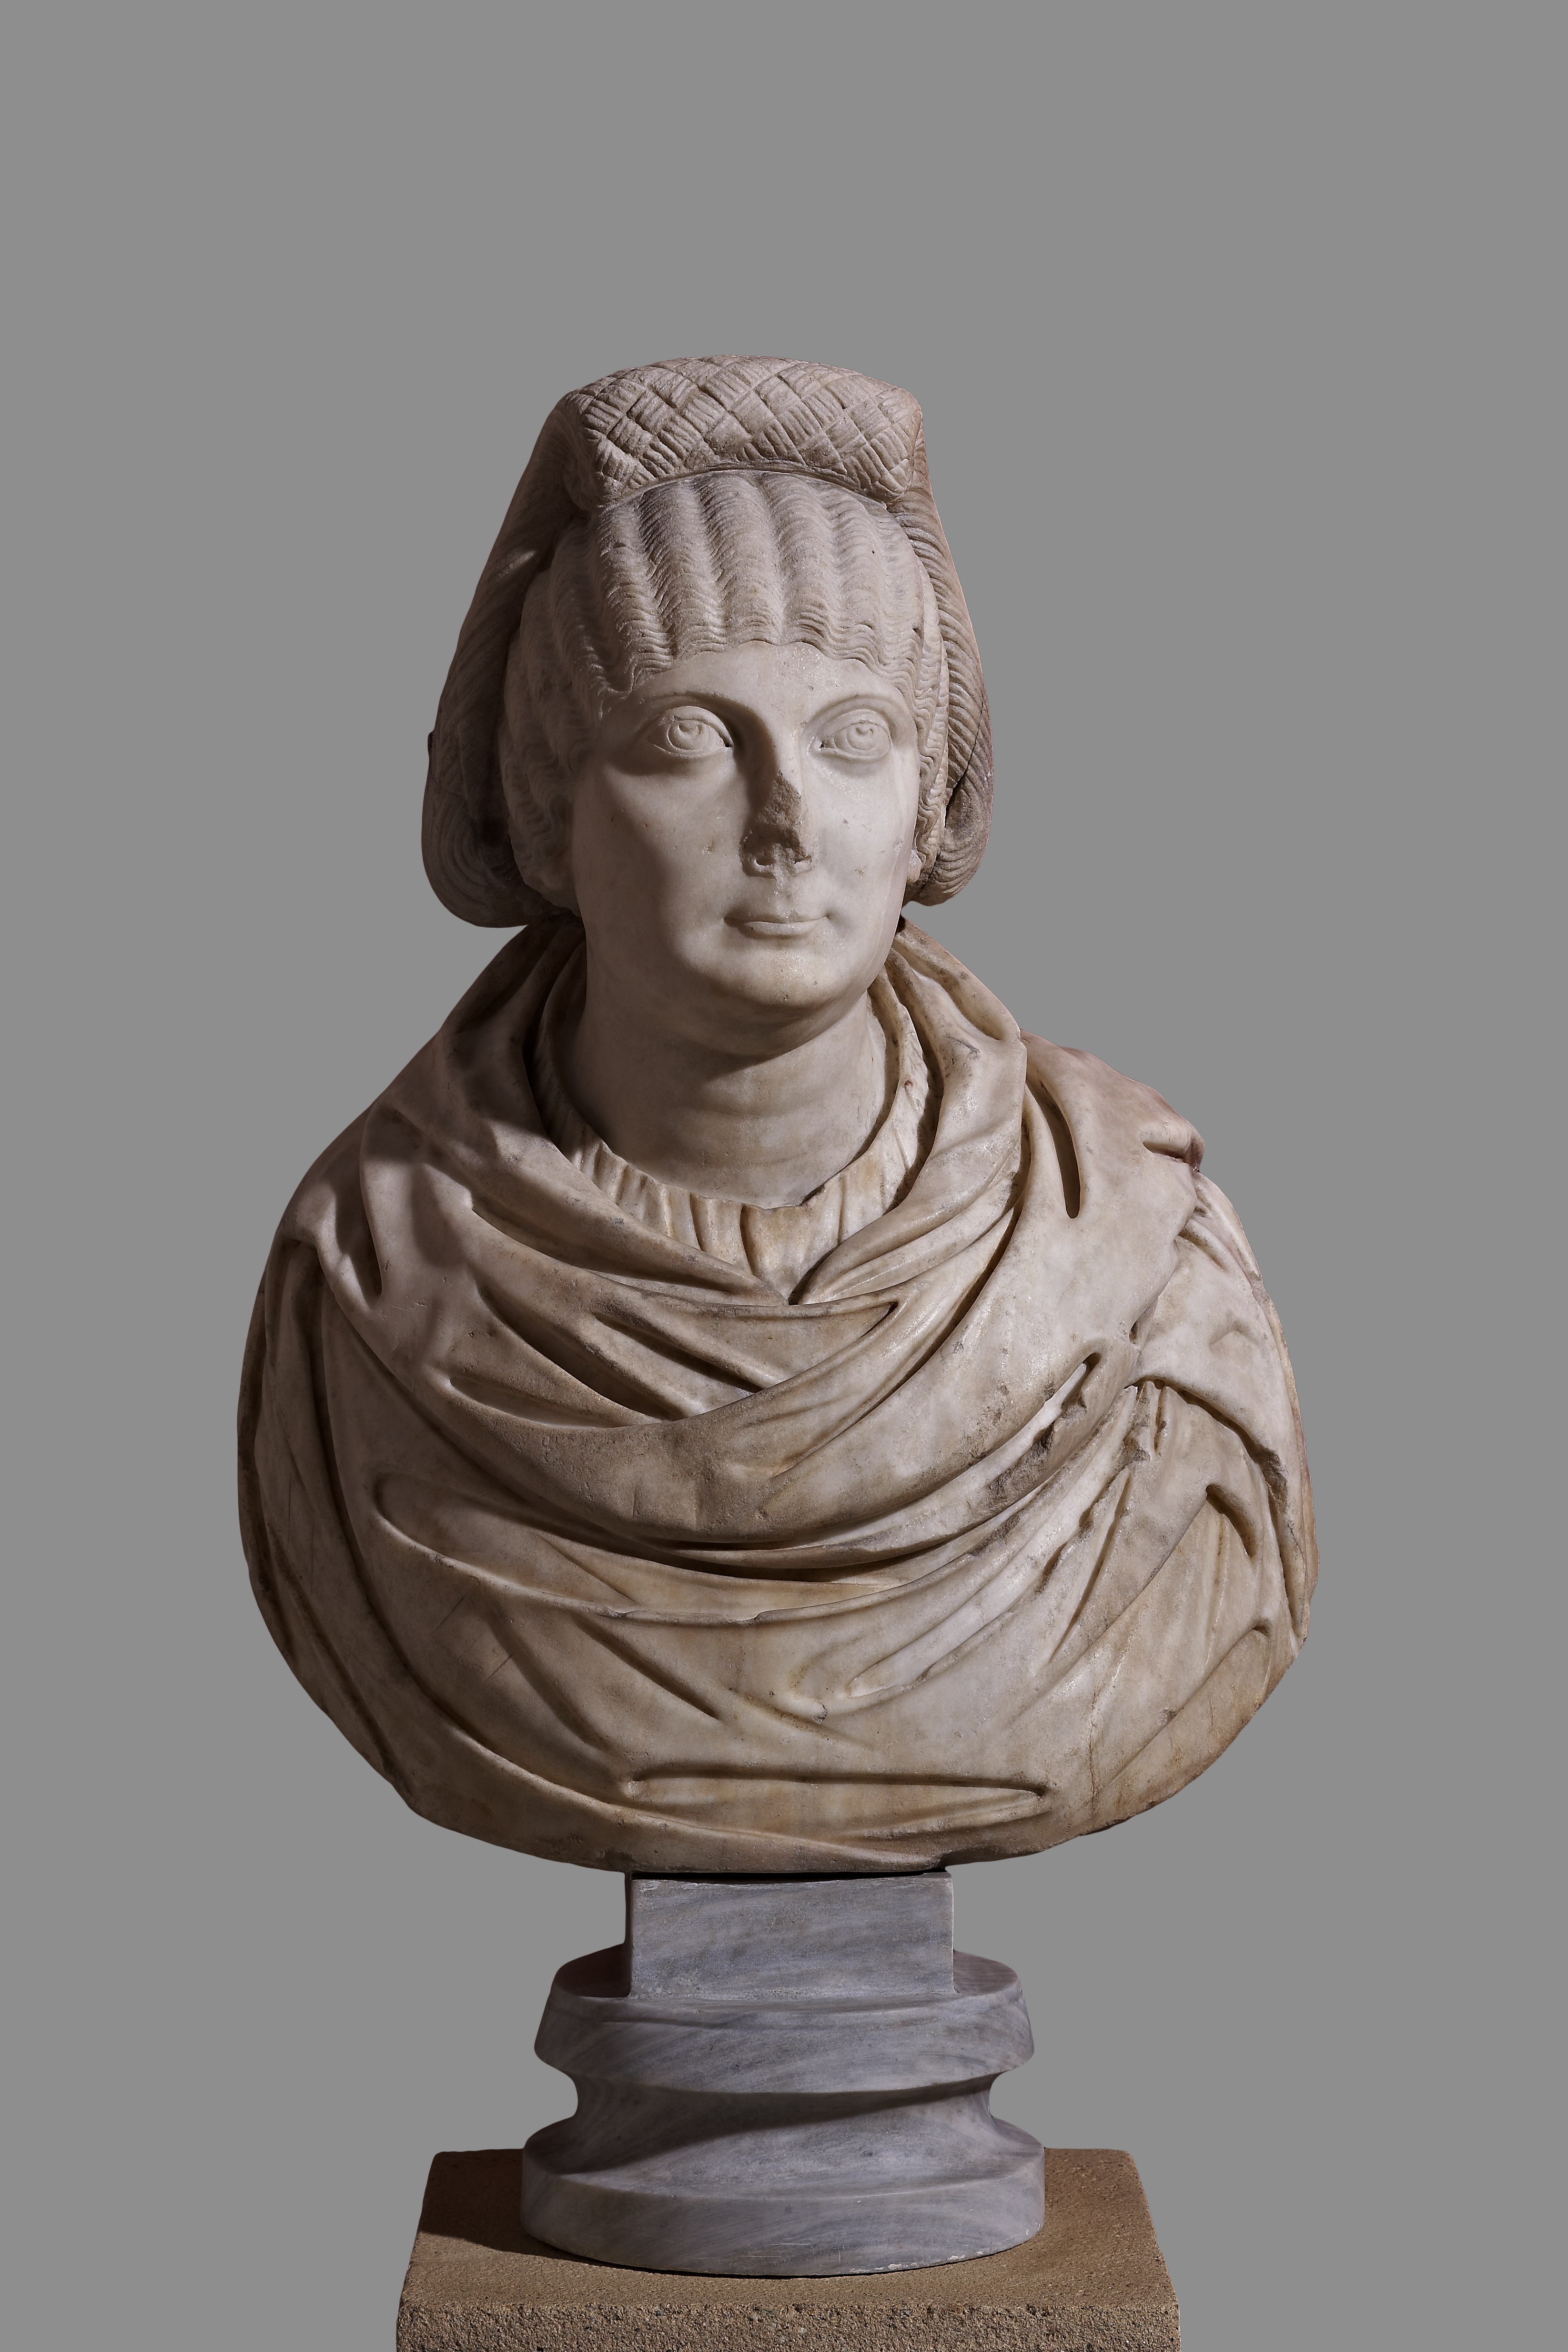 Busto con retrato femenino, hacia 400. Museo Arqueológico, Salonicco